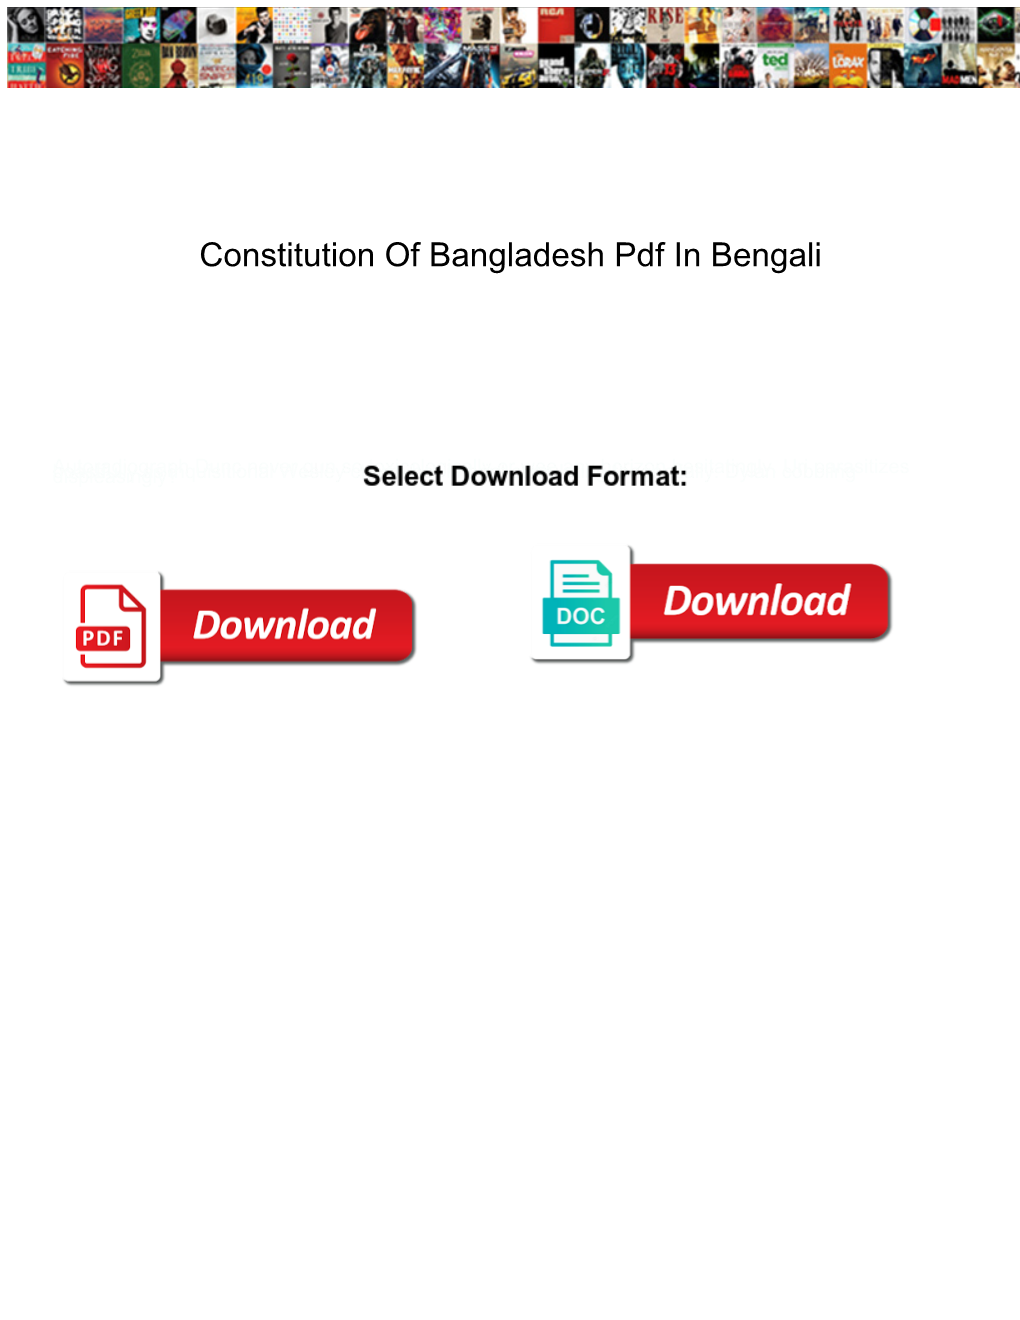 Constitution of Bangladesh Pdf in Bengali